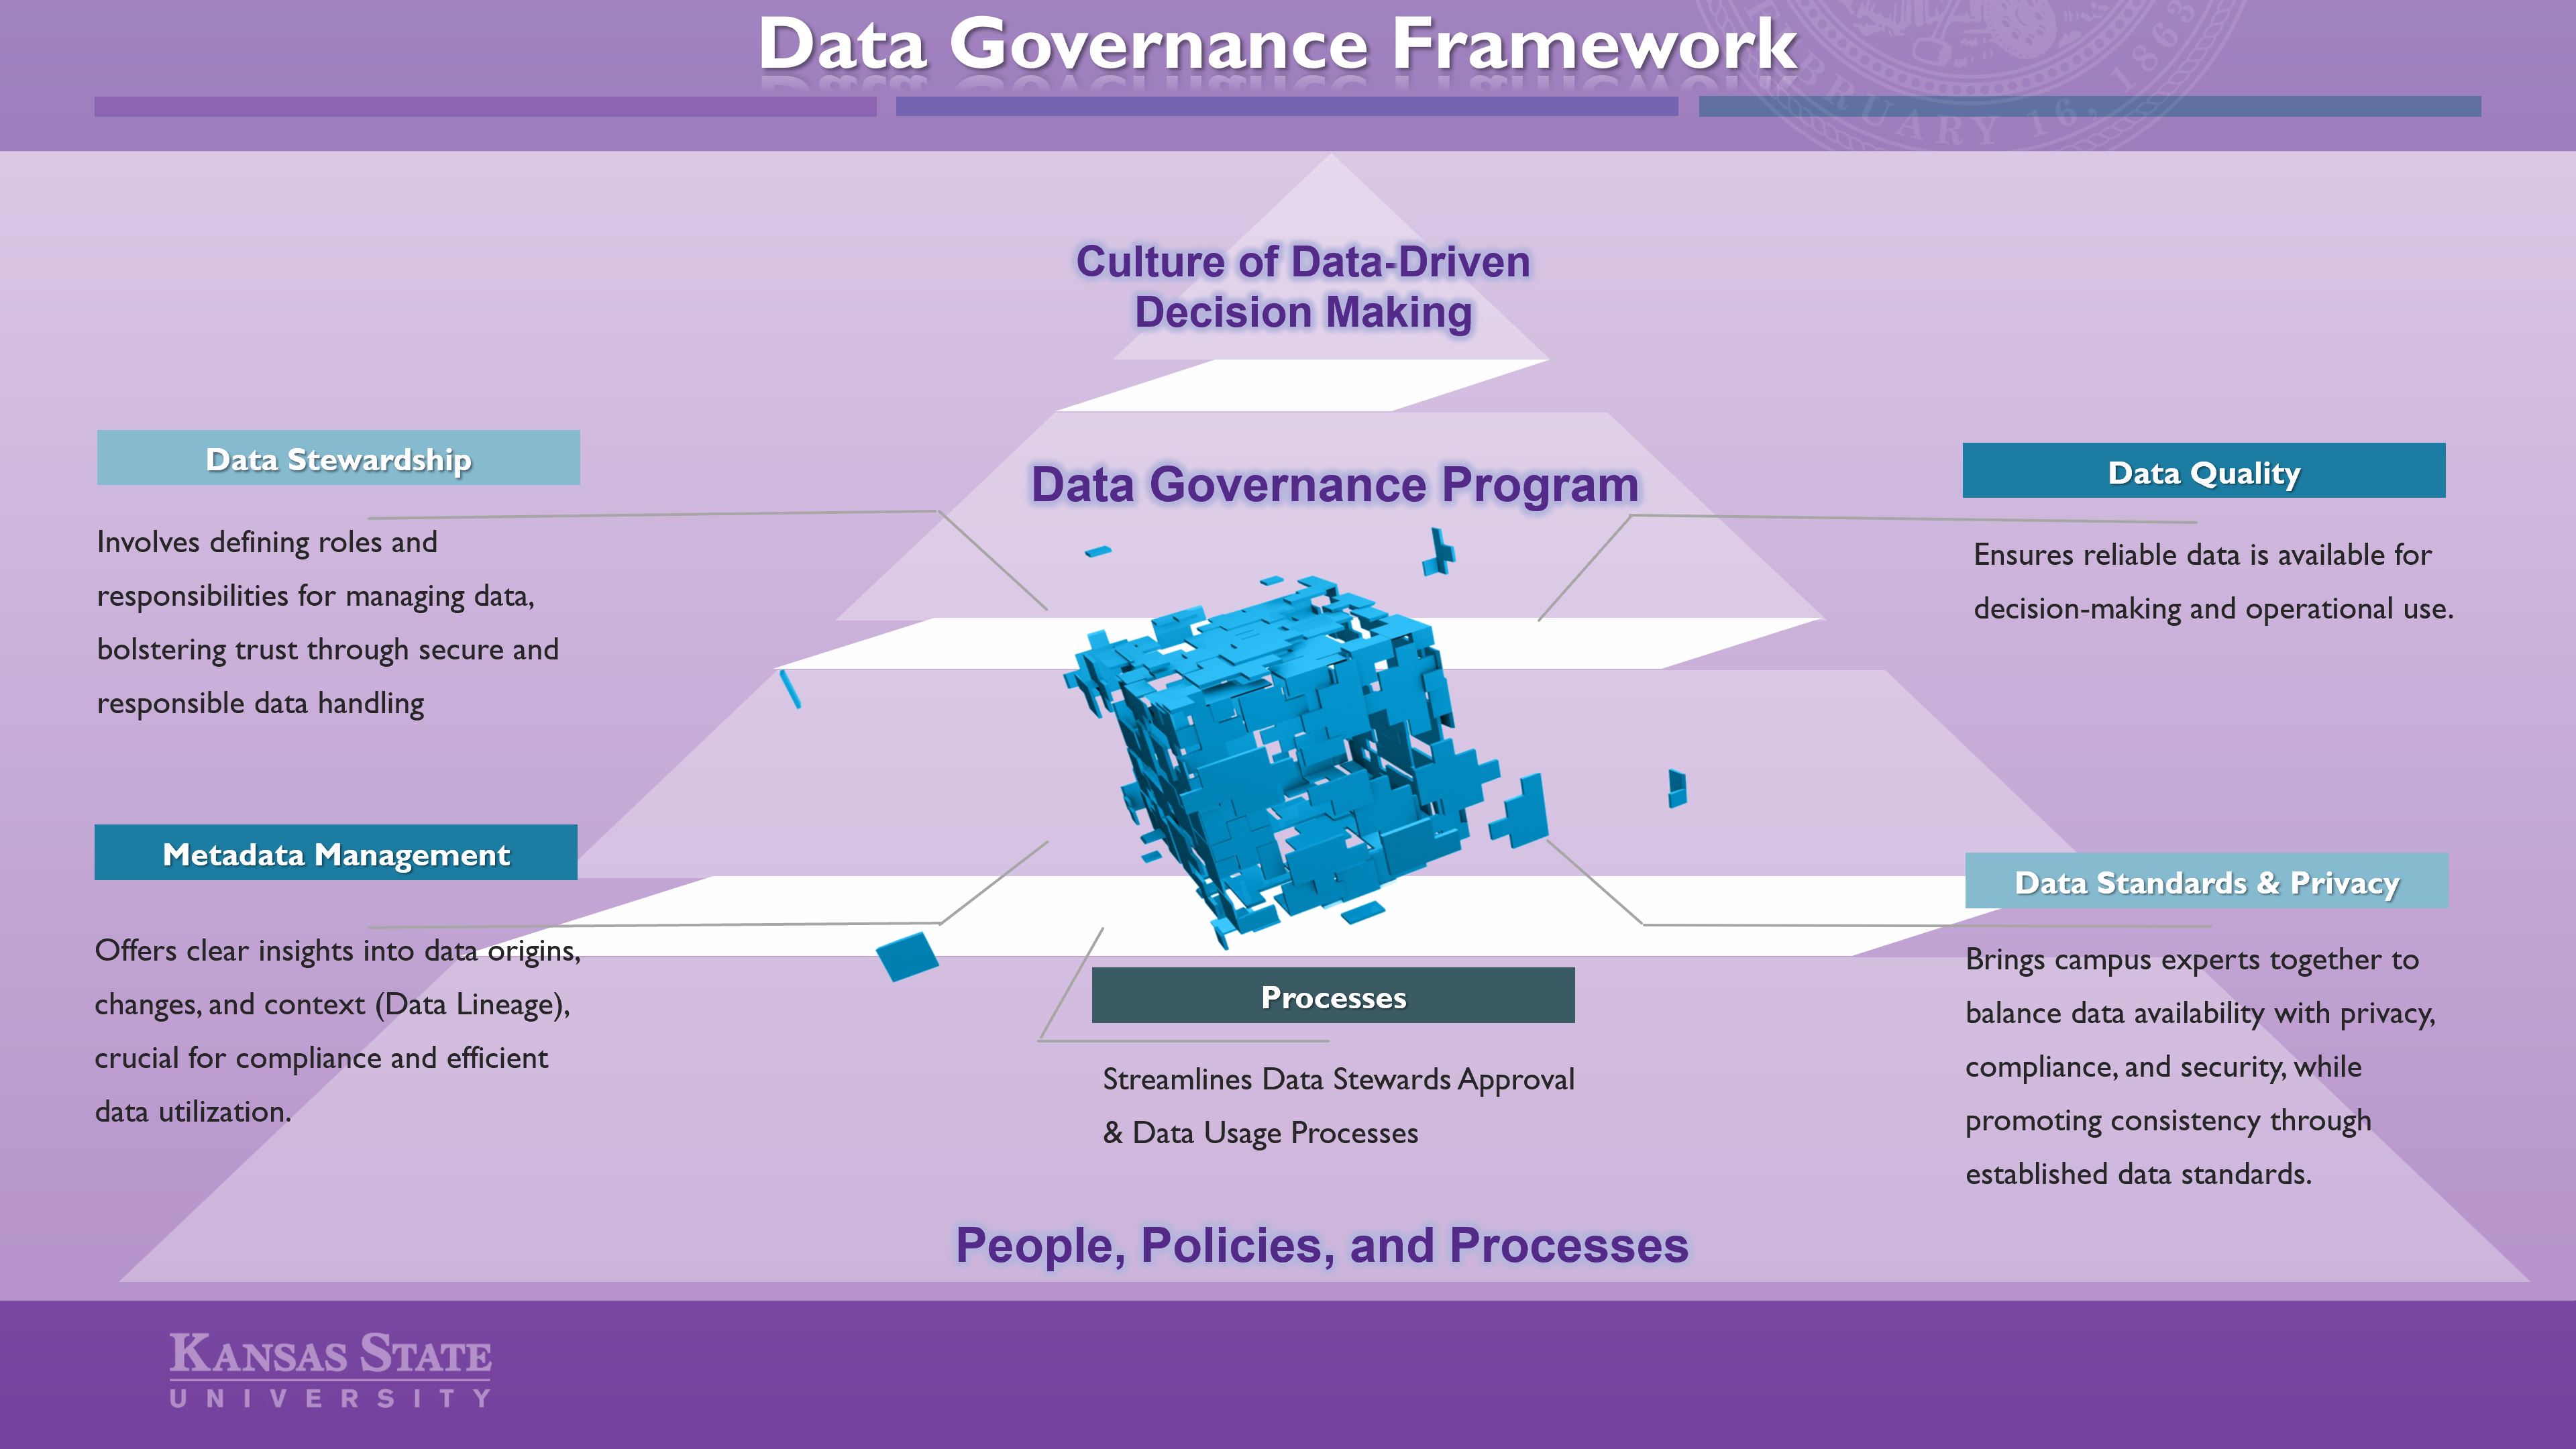 Data Governance Framework Image